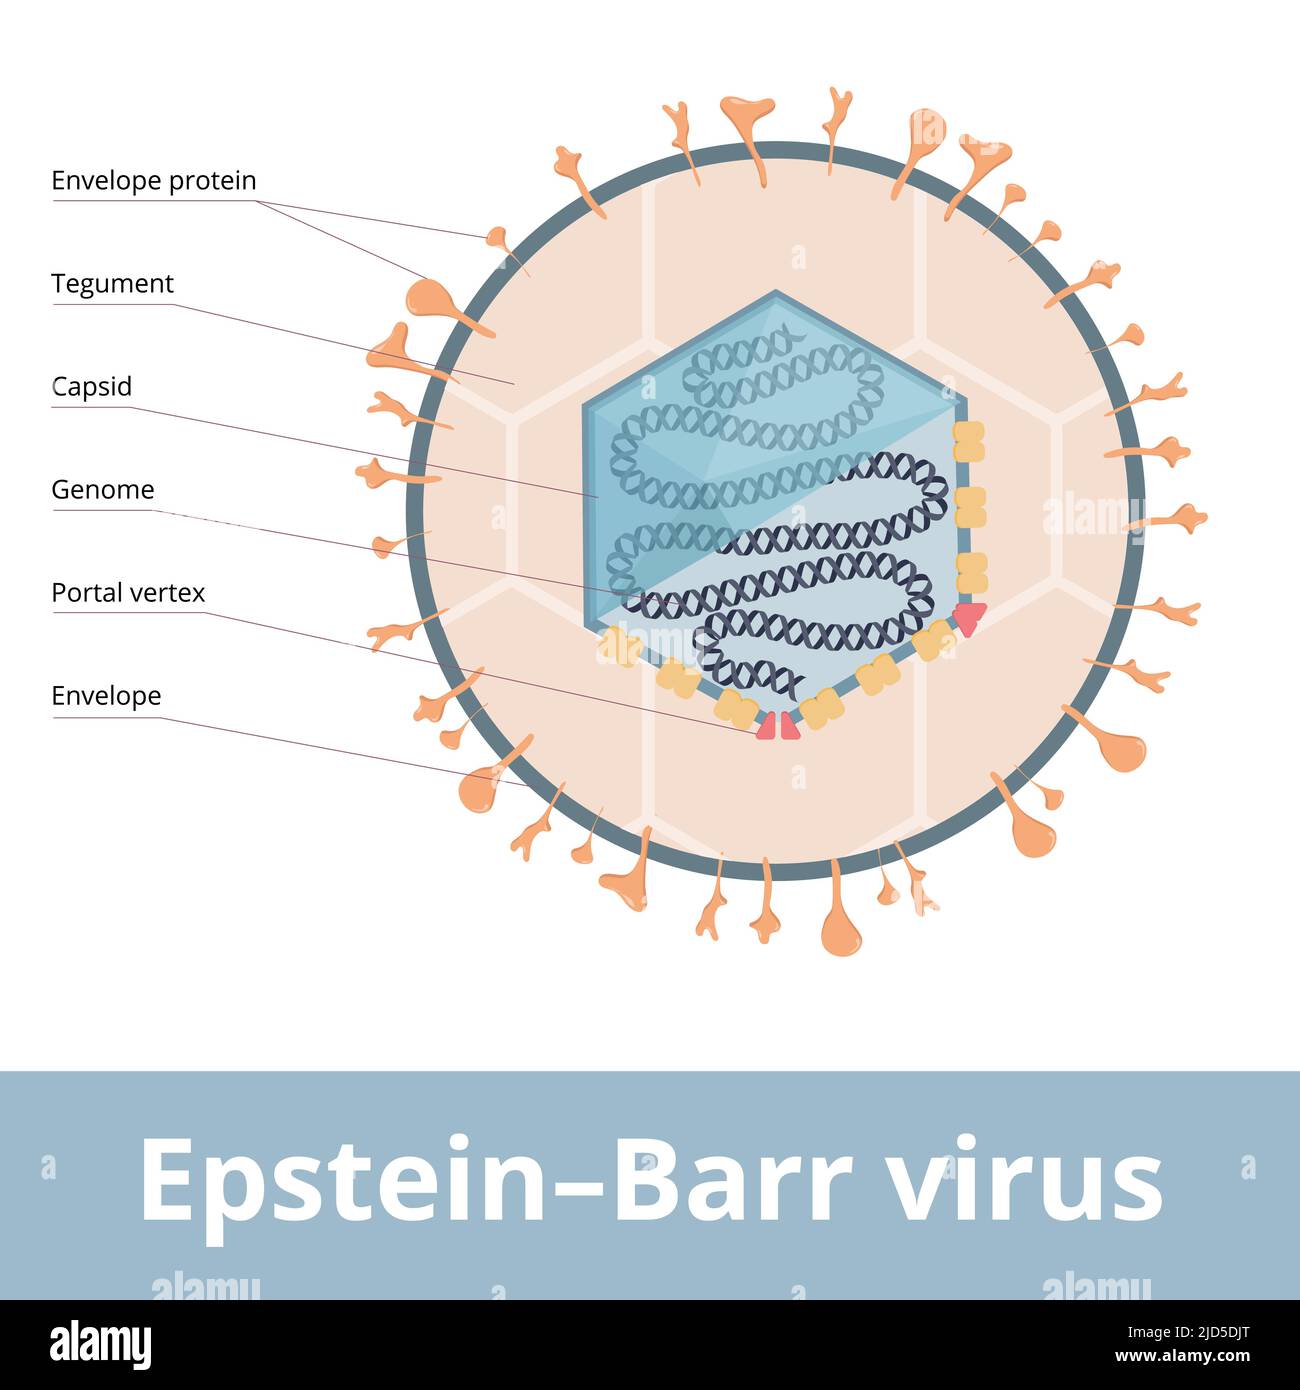 Virus di Epstein-Barr (EBV, Gammaherpesvirus umano 4) noto come causa di mononucleosi infettiva. La visualizzazione del virione include genoma, capside. Illustrazione Vettoriale